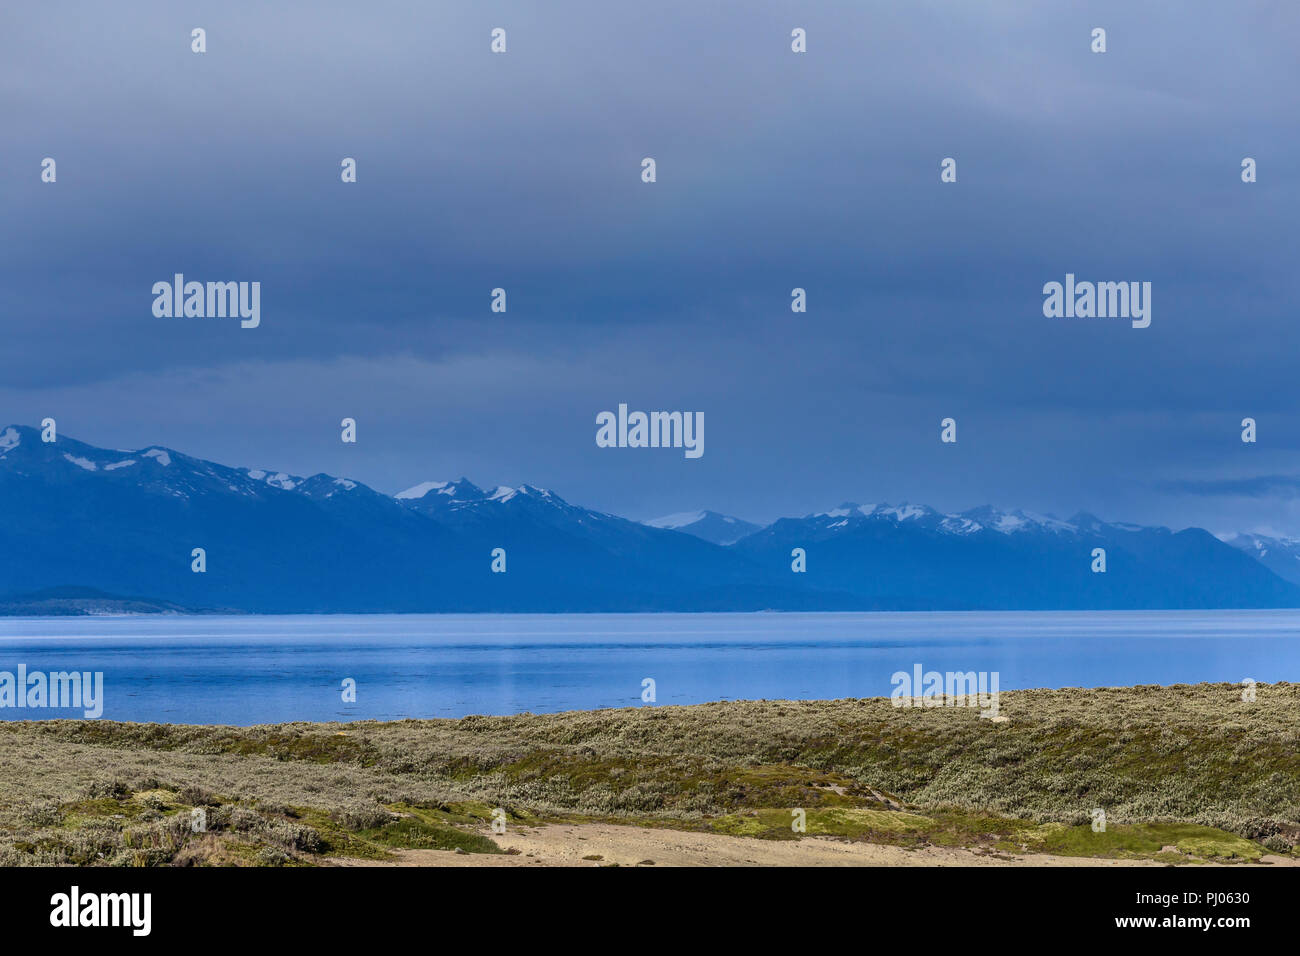 Ushiaia, Tierra del Fuego, Antartida e Islas del Atlantico Sur, Argentina Stock Photo